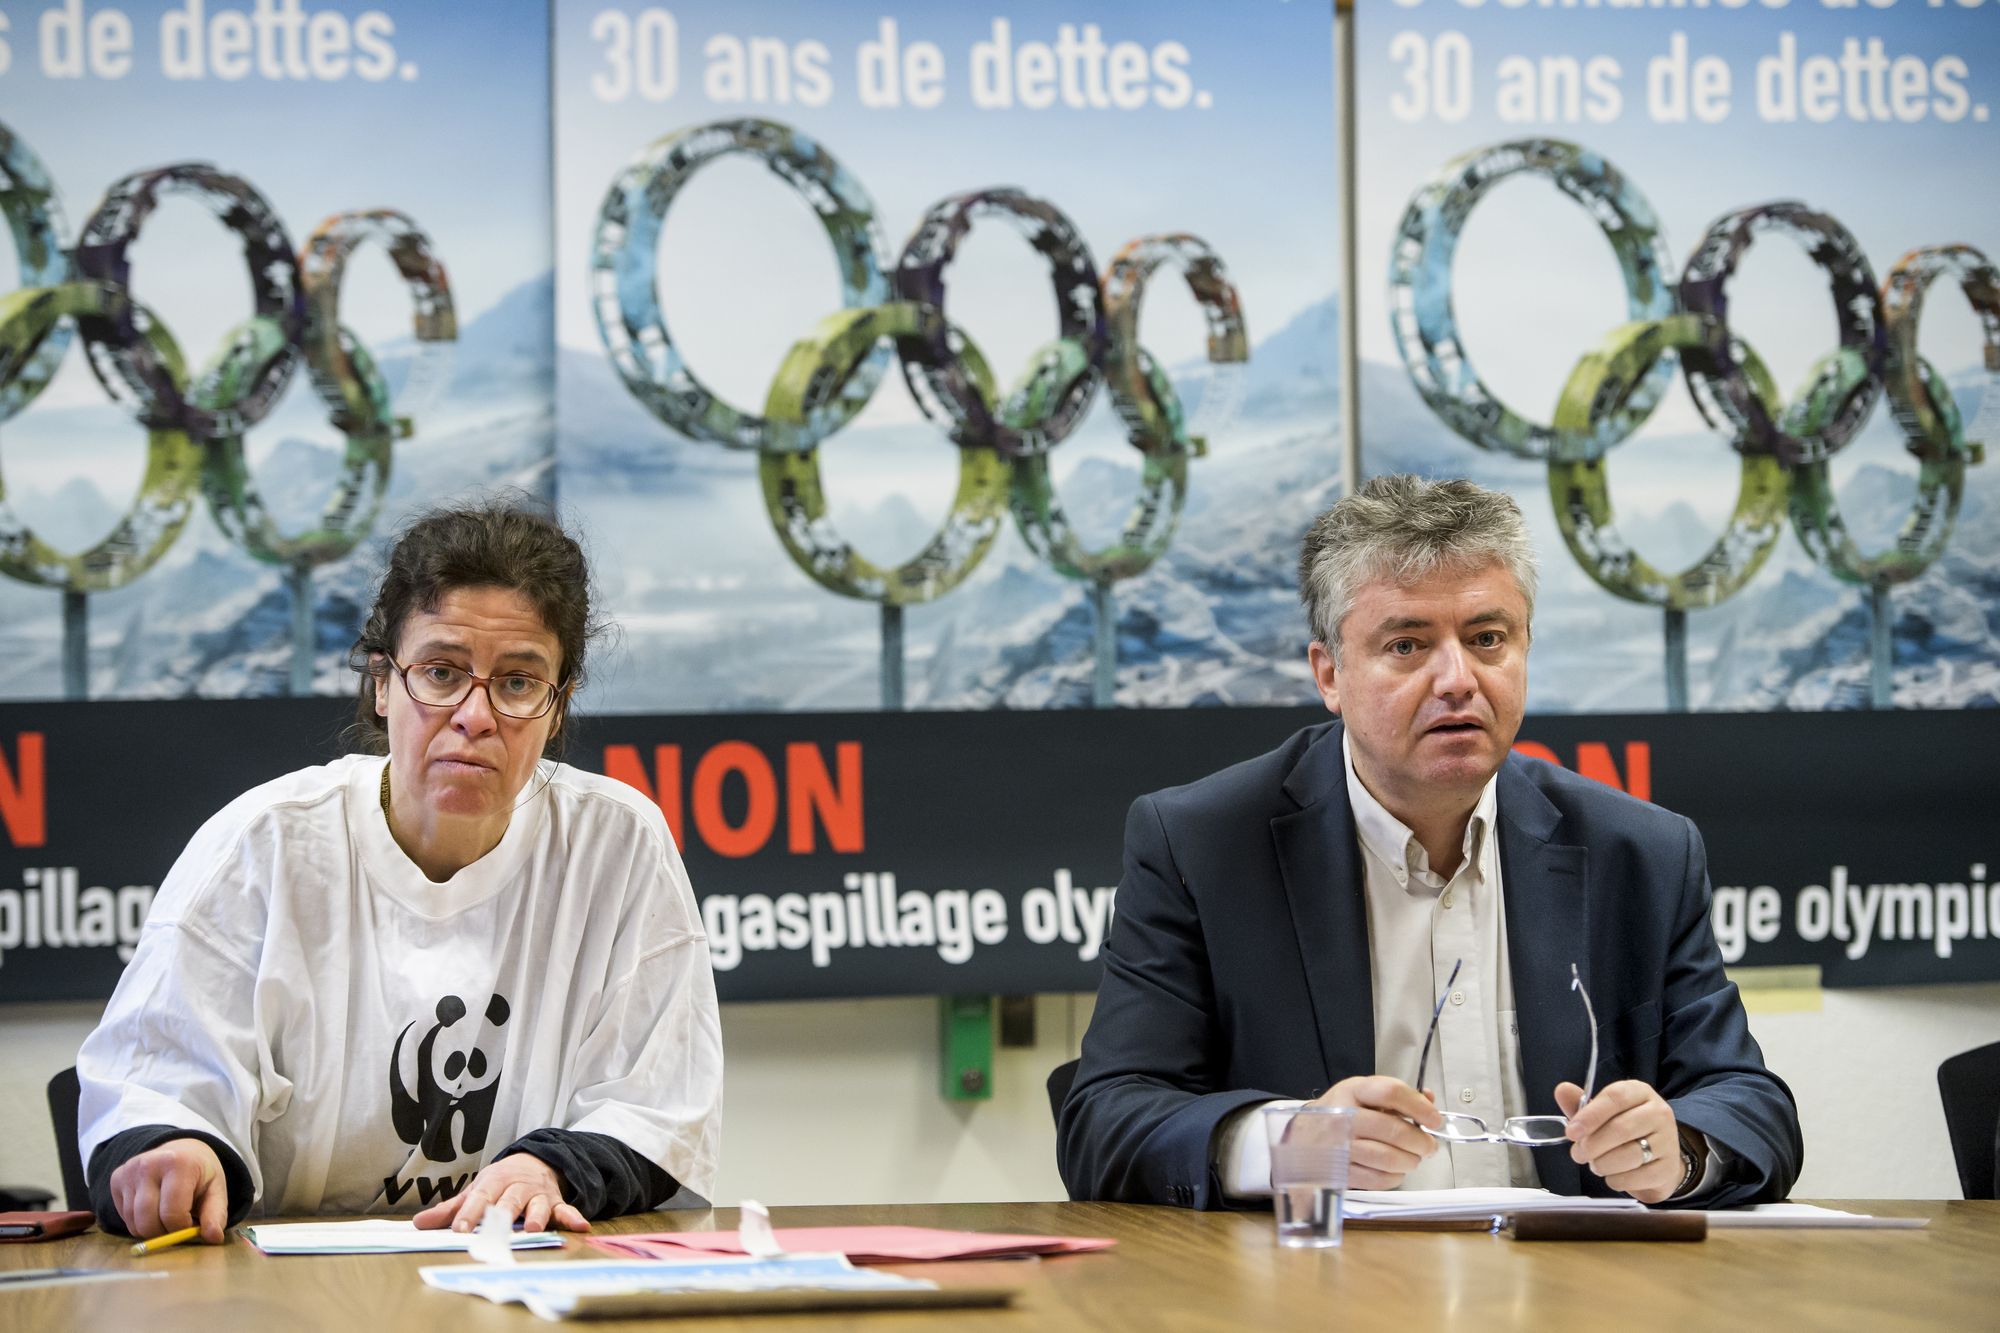 Marie-Therese Sangra, gauche, secrétaire régionale WWF Valais parle et Jean-Pascal Fournier, droite, president des Verts valaisans, lors d'une conference de presse du comite valaisan s'opposent a la candidature Sion 2026 pour les Jeux Olympiques d'hiver.